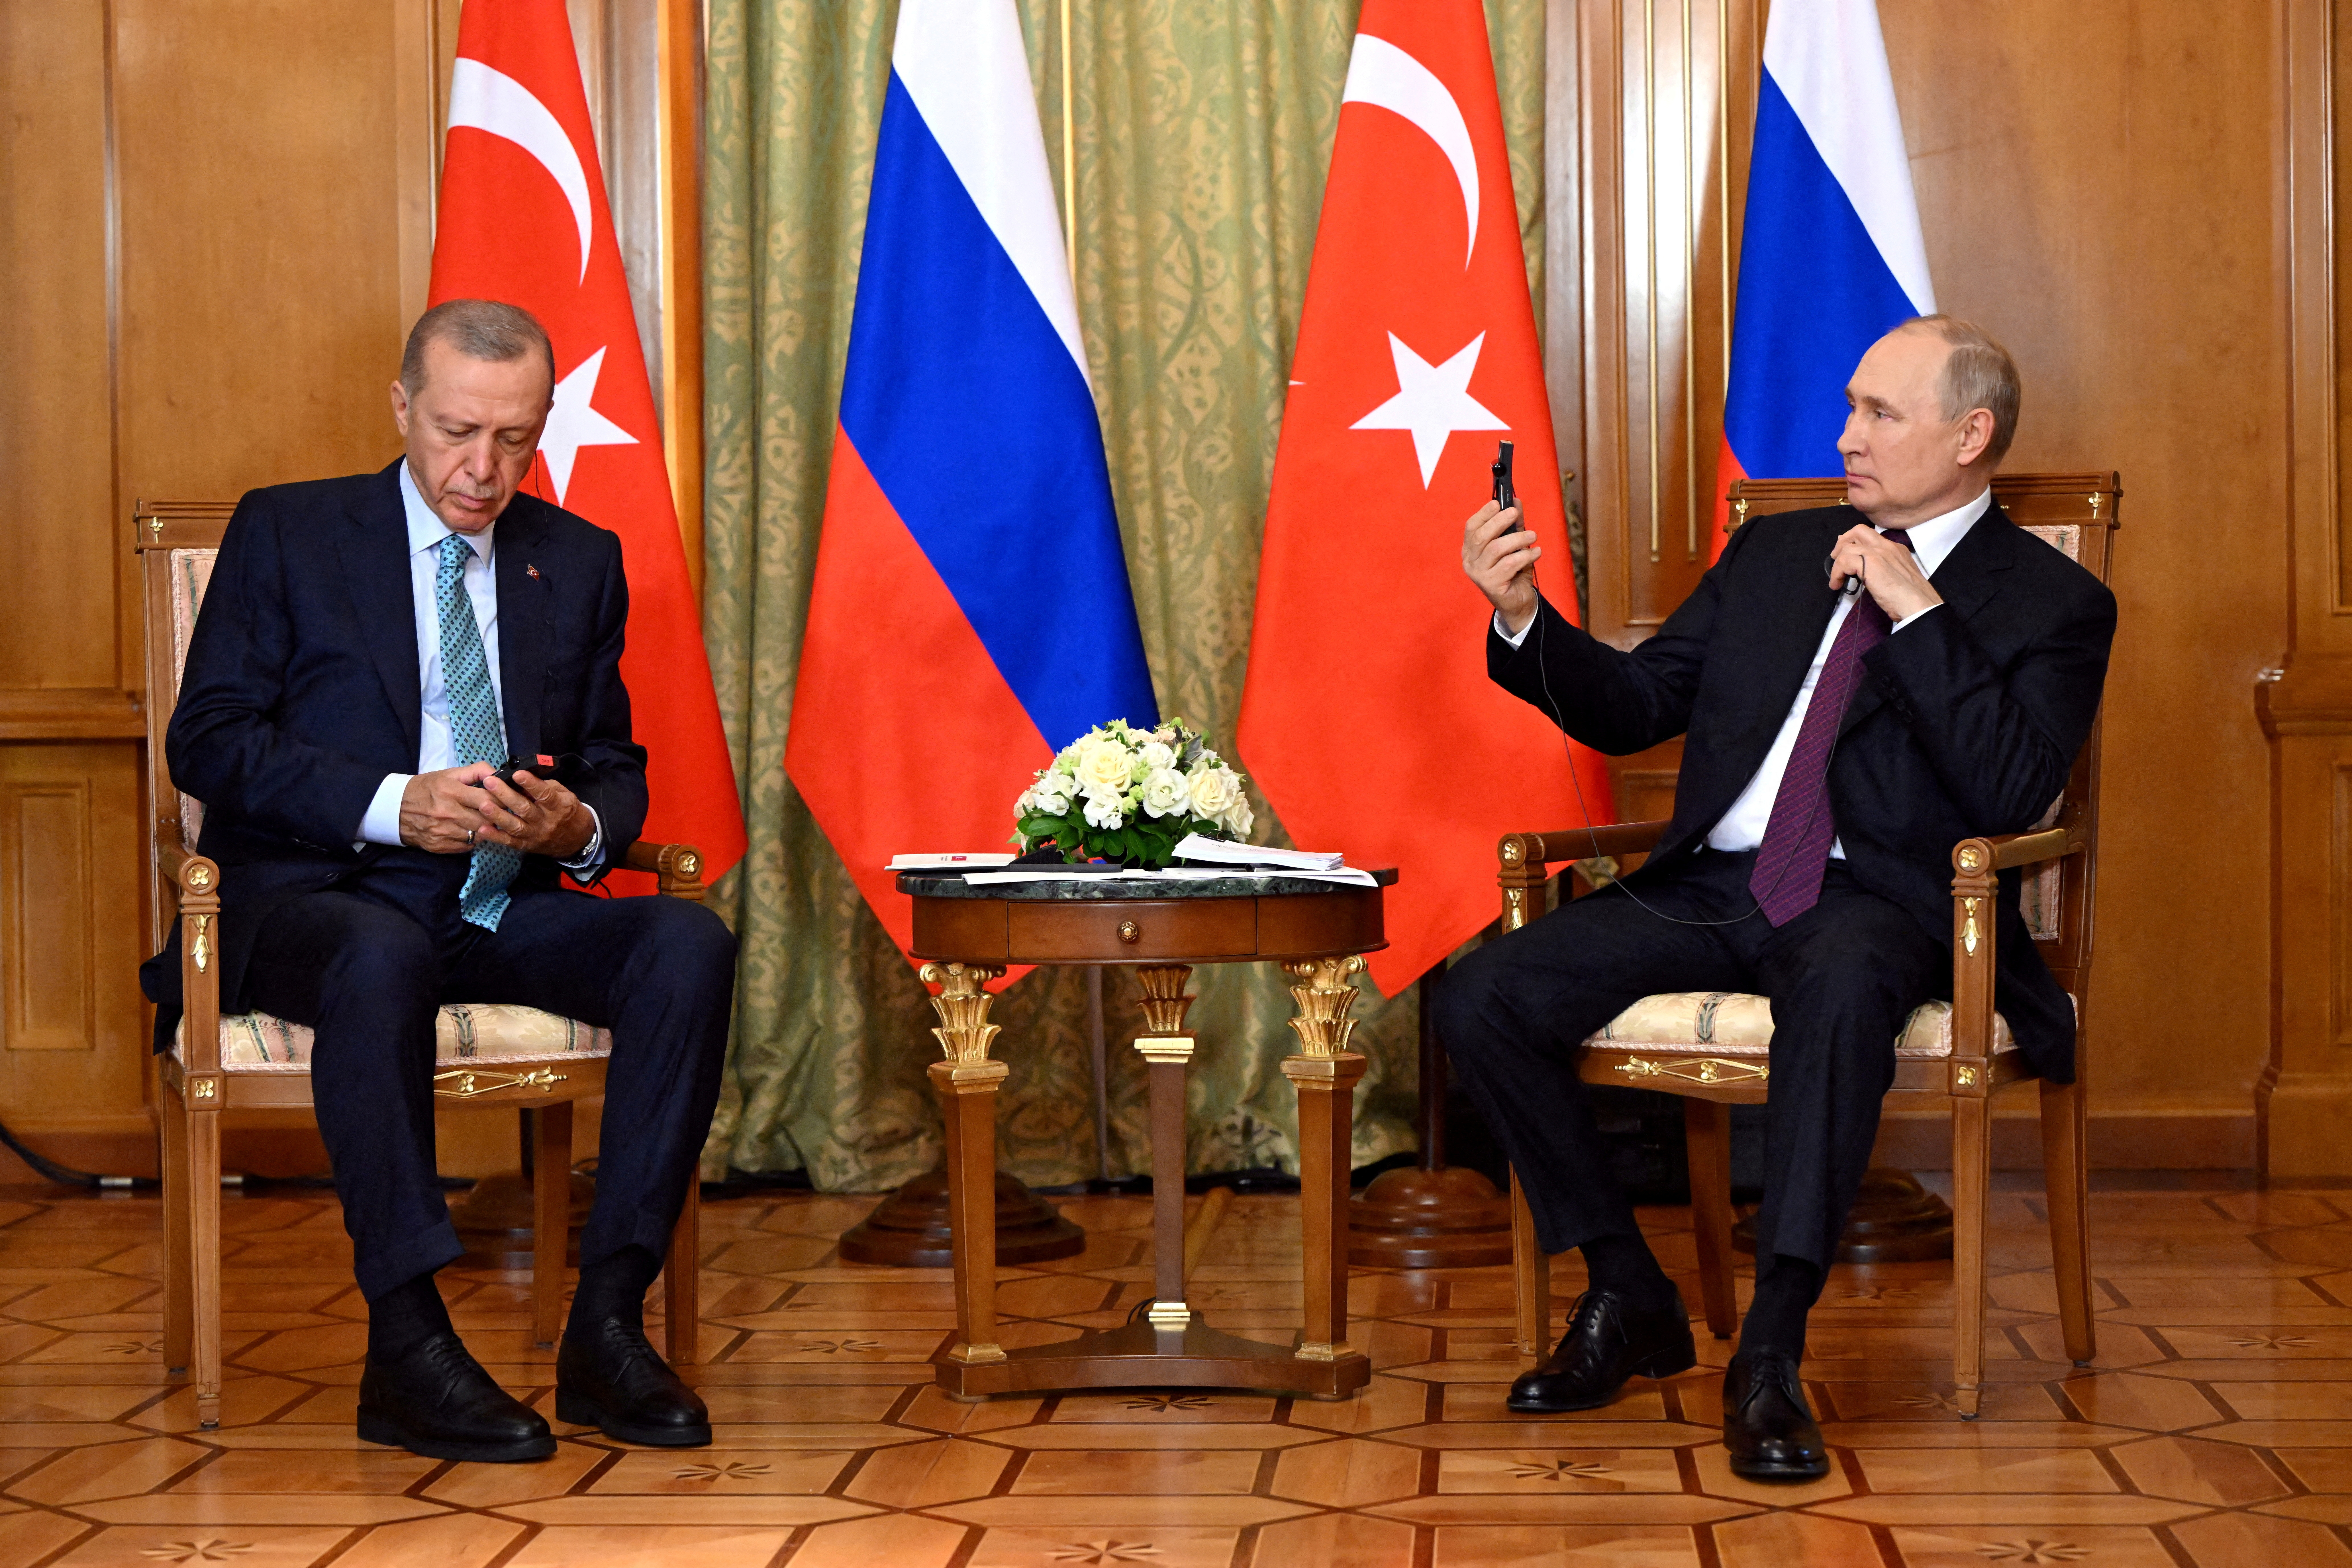 Συνάντηση Ερντογάν και Πούτιν στις 12 Φεβρουαρίου – Δυο μέρες μετά ο Τούρκος πρόεδρος επισκέπτεται την Αίγυπτο